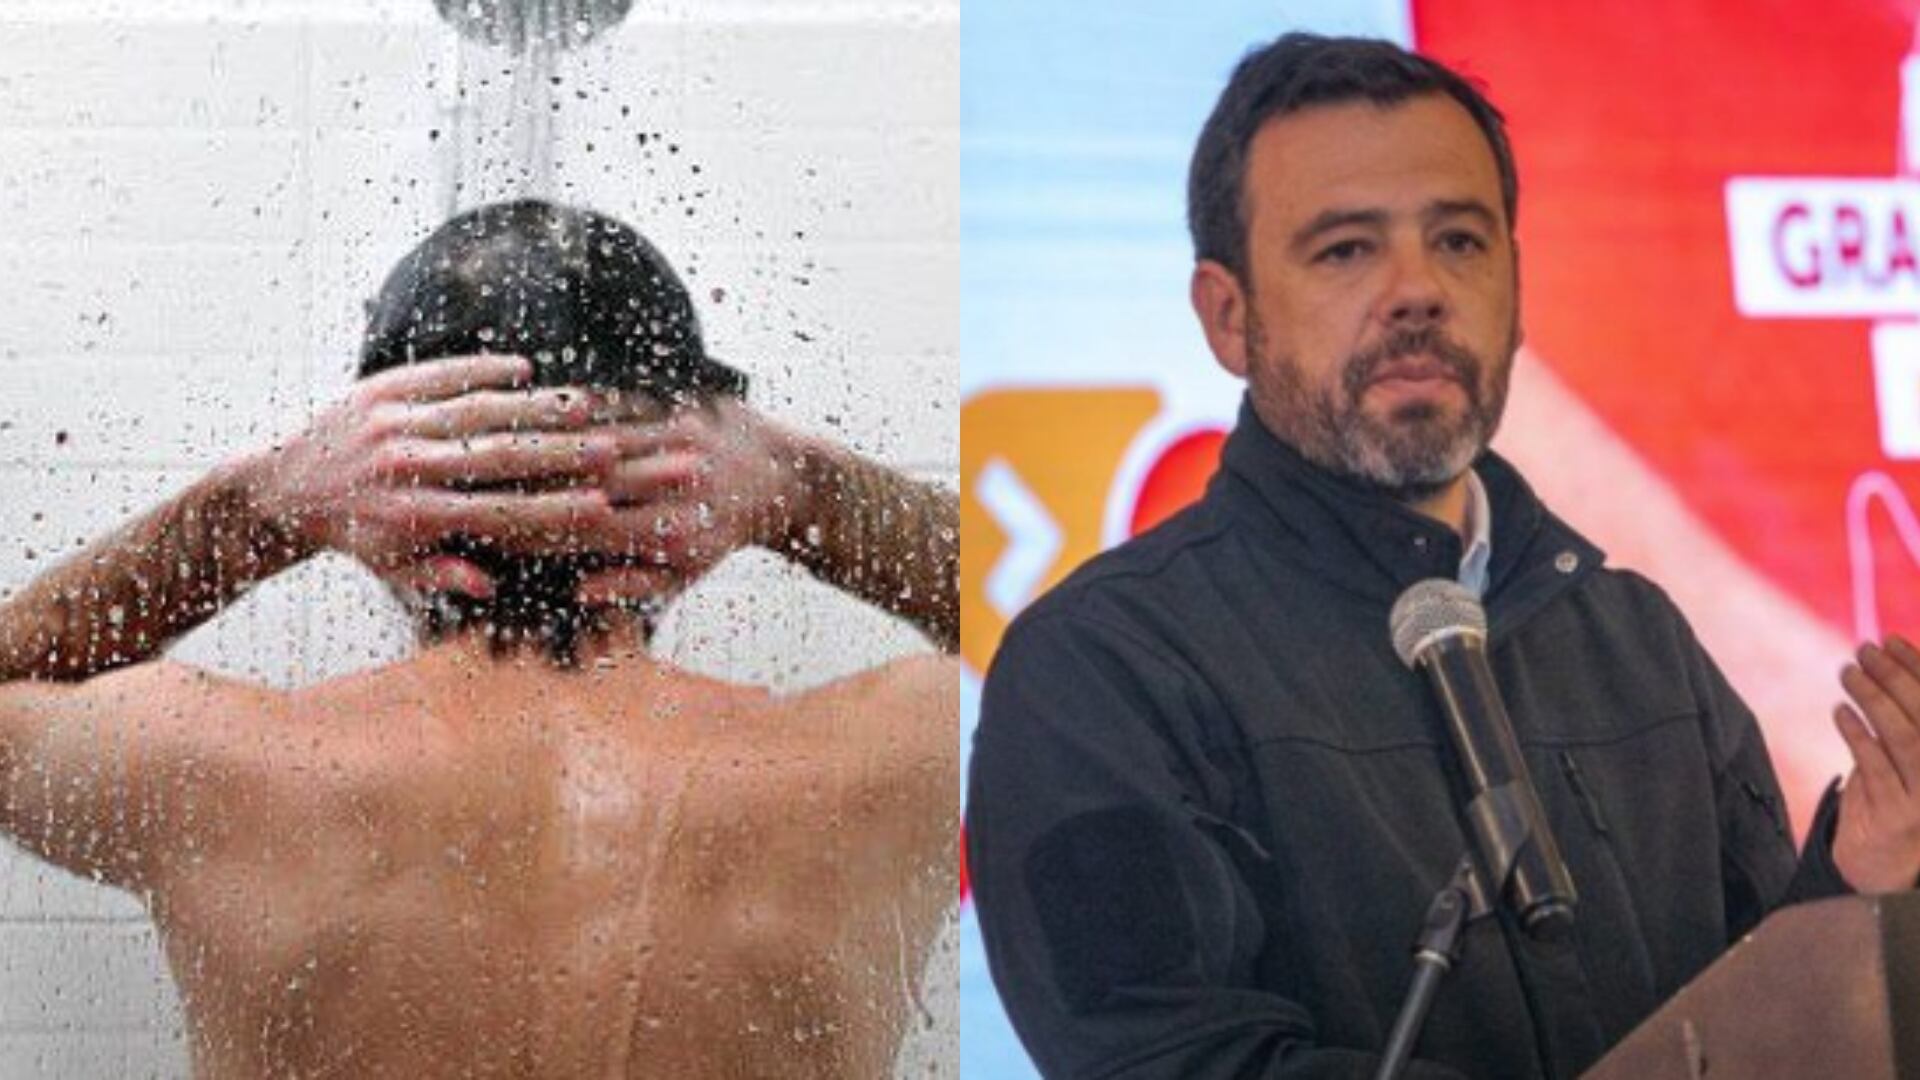 El alcalde Carlos Fernando Galán le respondió de manera jocosa a un ciudadano que dijo que bañarse en pareja gastaba más agua y tiempo.